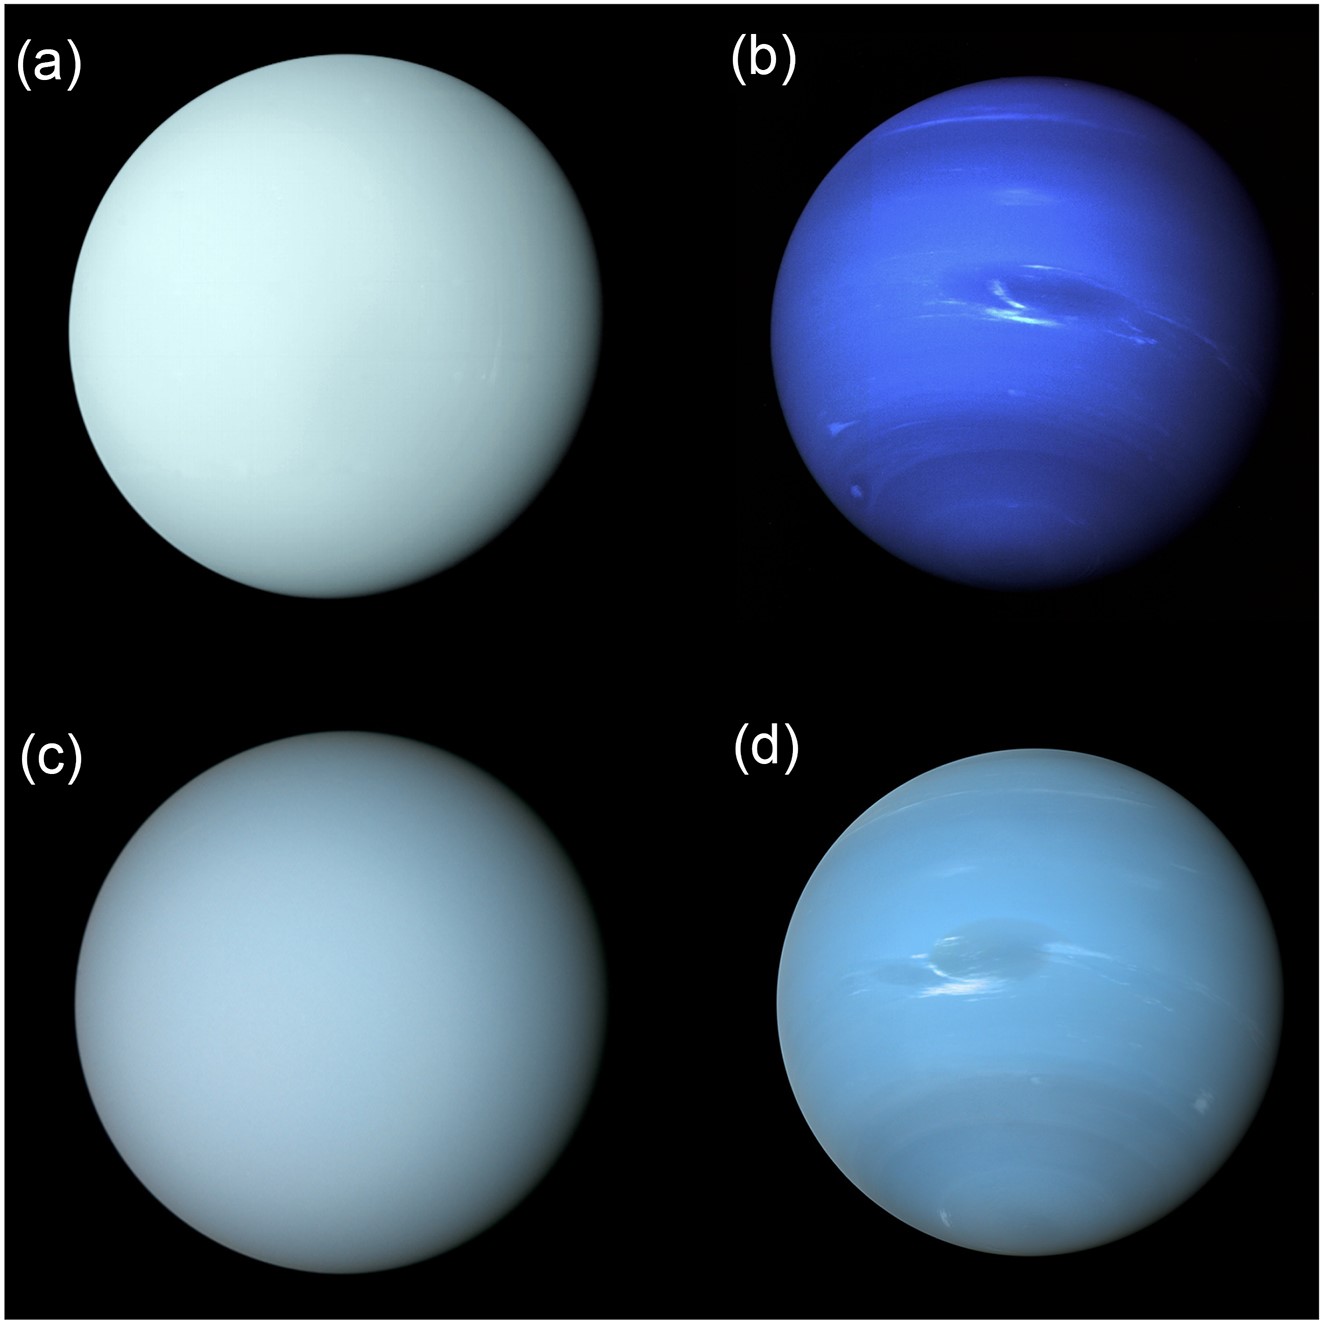 изображения внешнего вида Урана и Нептуна